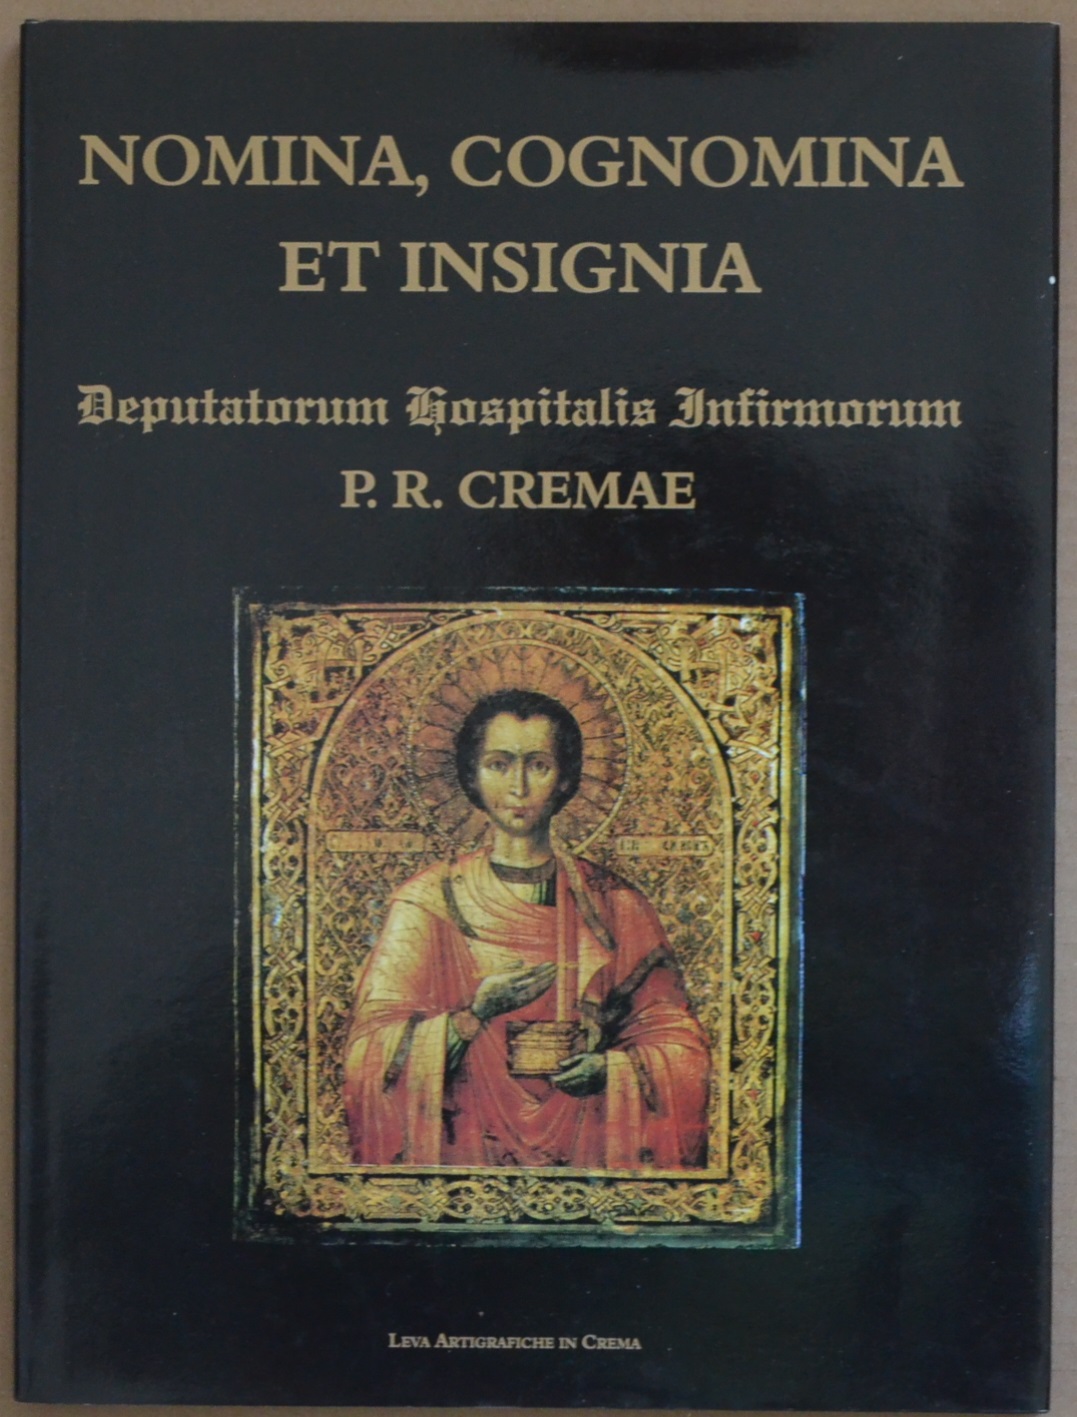 Nomina, cognomina et insignia. Deputatorum Hospitalis Infirmorum P.R. Cremae